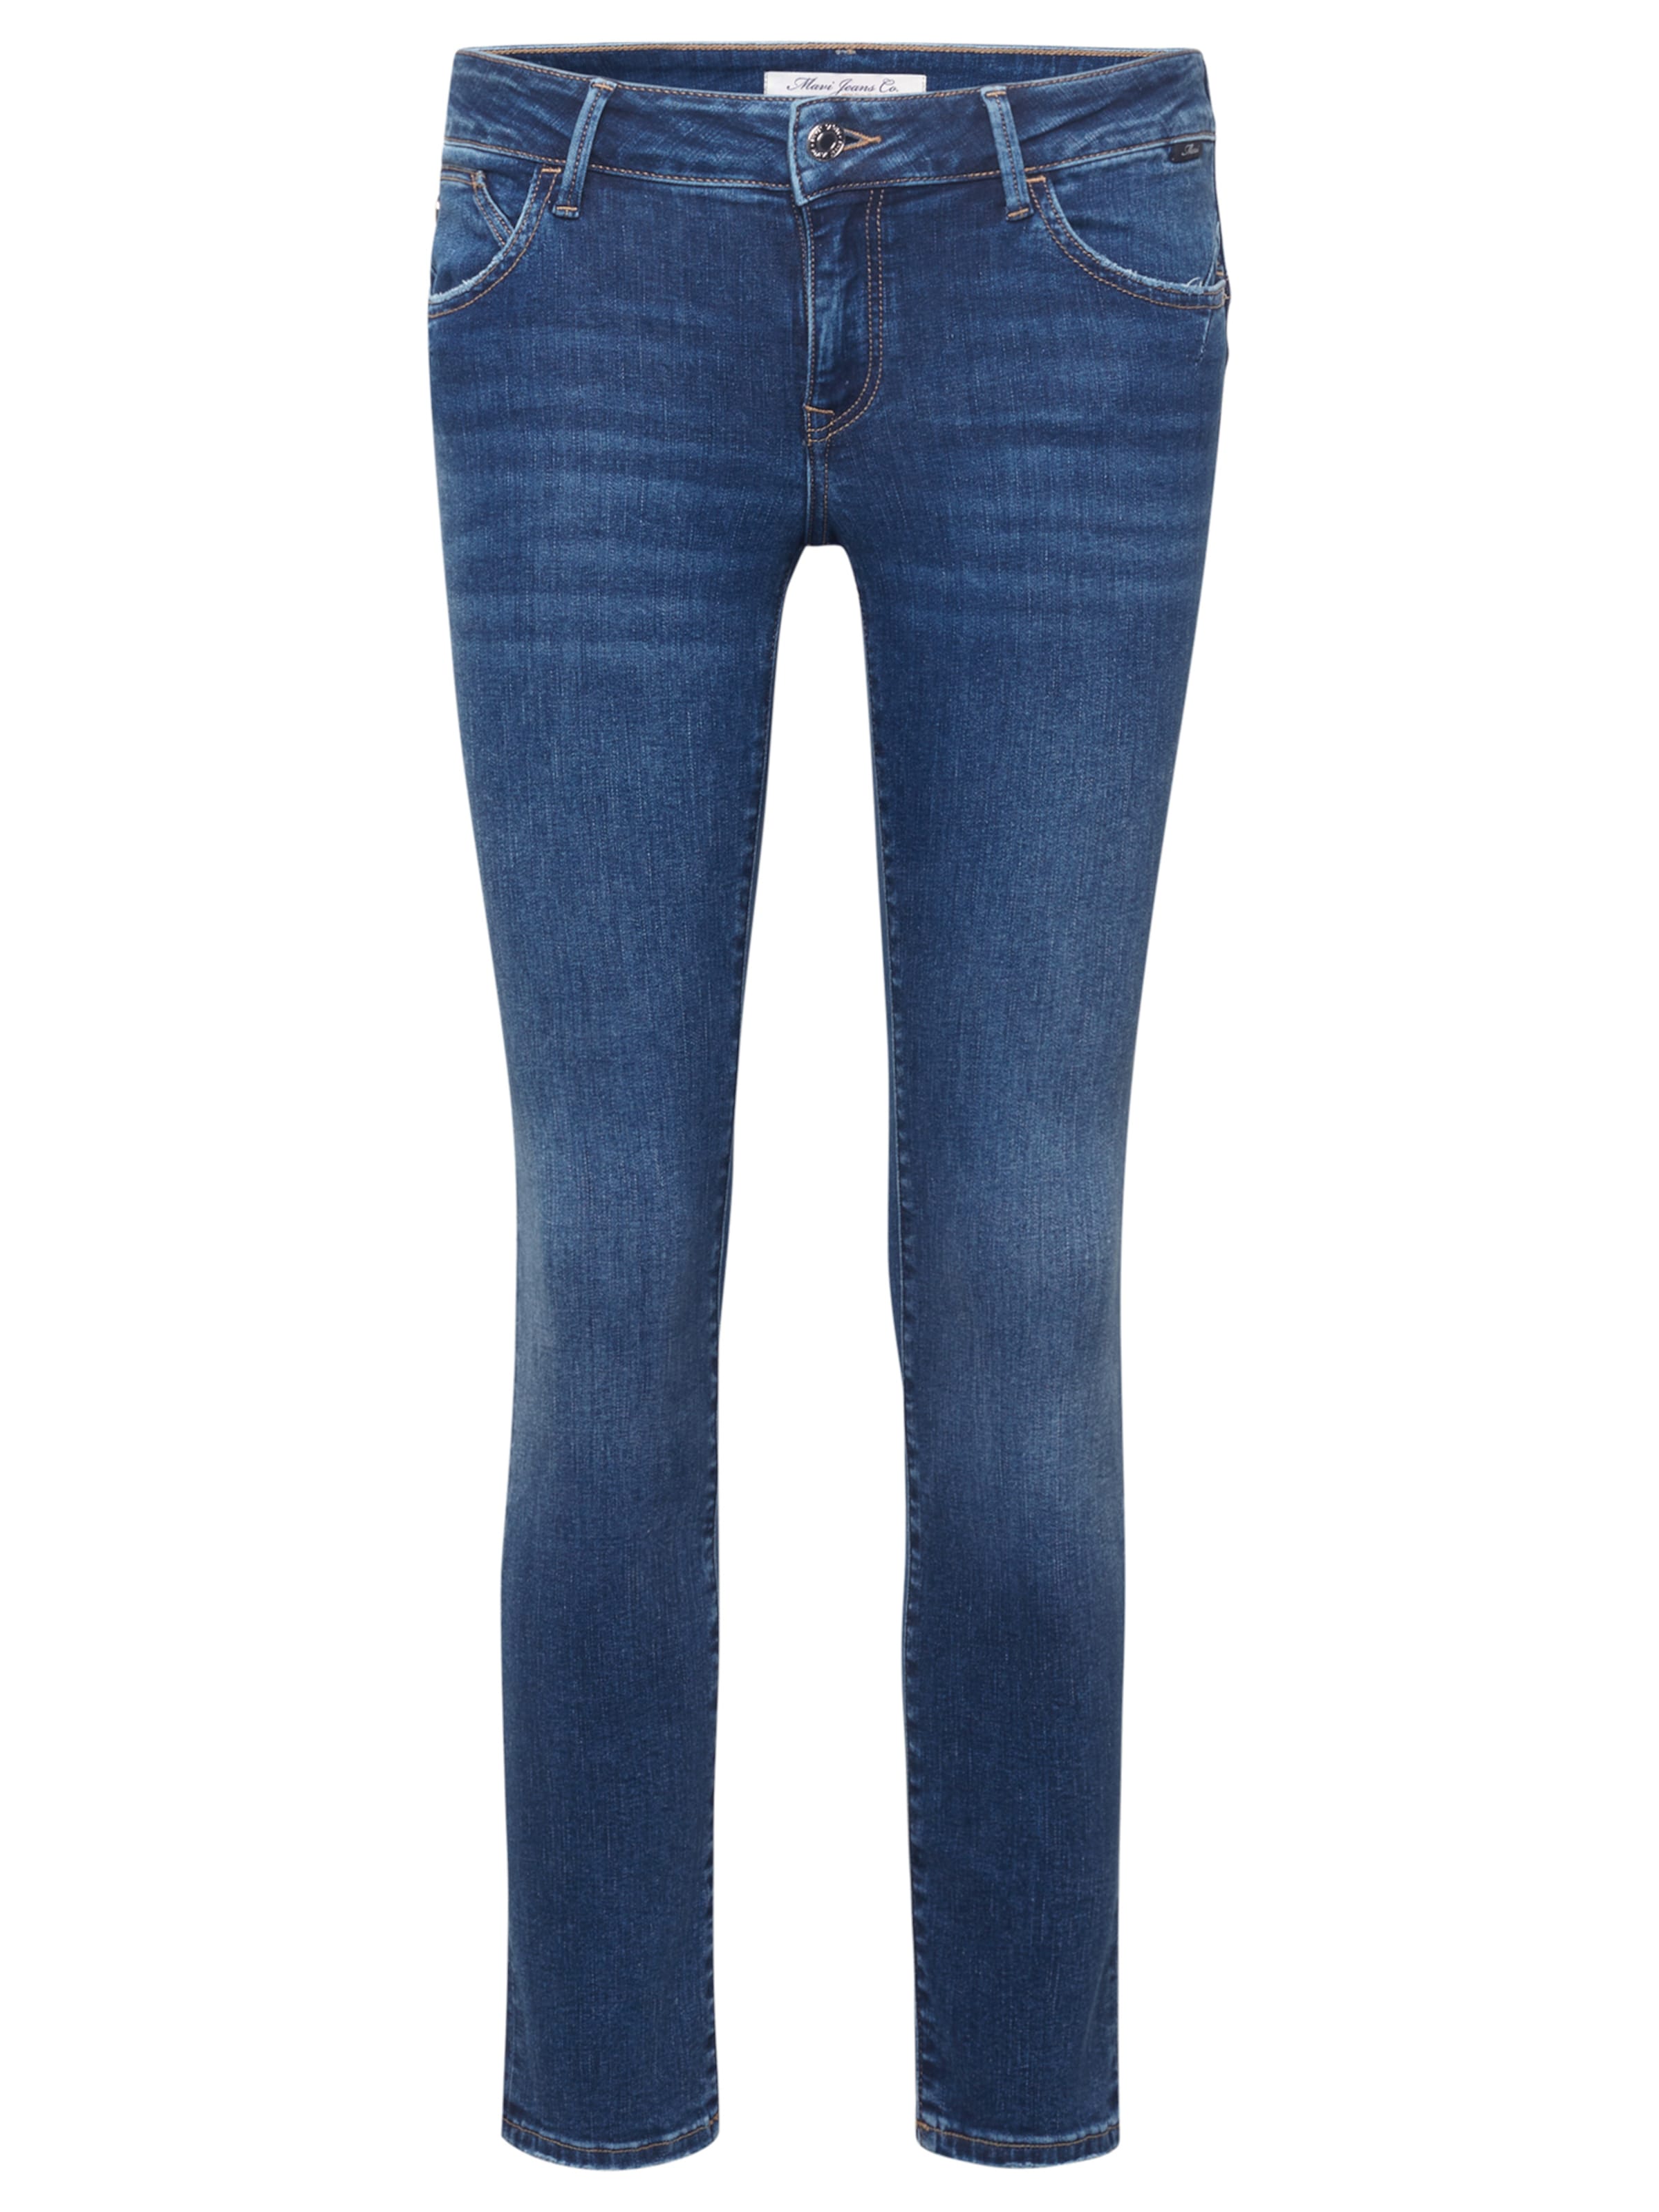 xp4bk Abbigliamento Mavi Jeans Lindy in Blu 